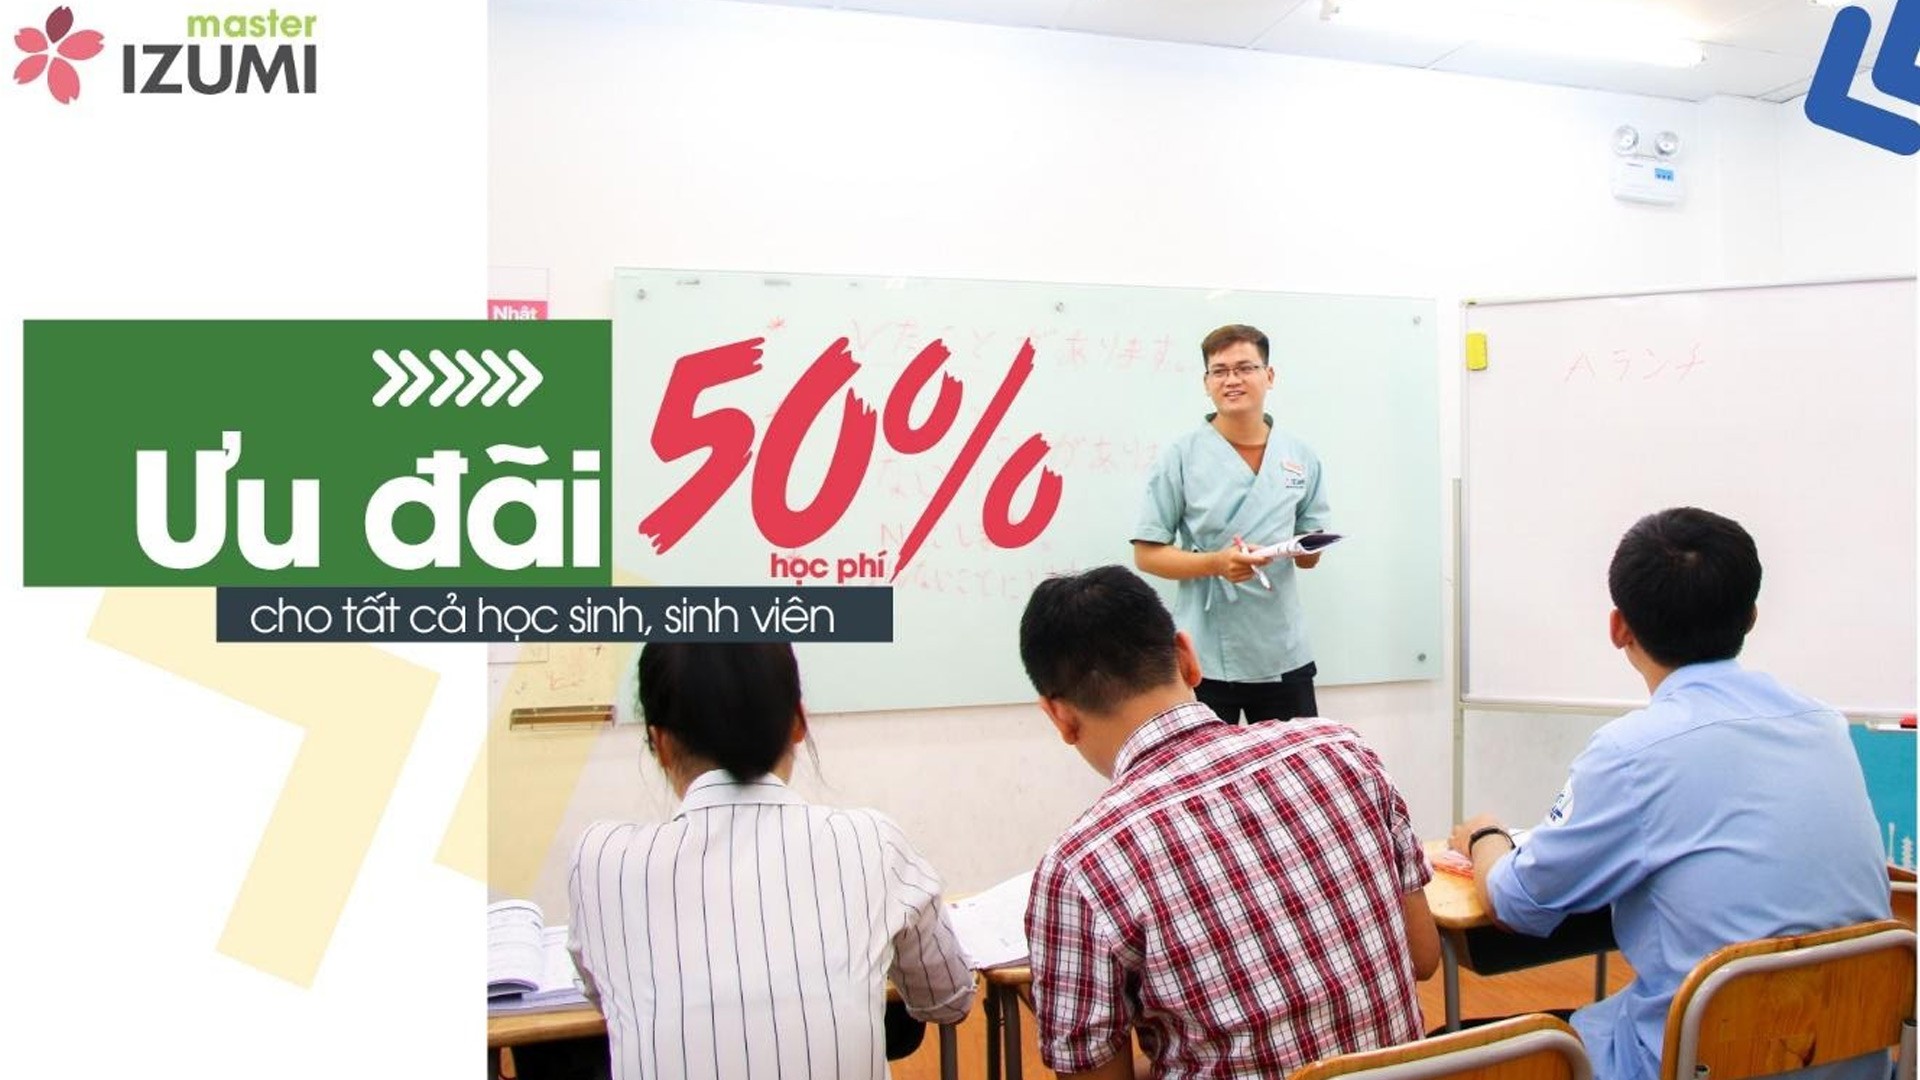 HOT: Trợ giá 50% học phí tiếng Nhật cho học sinh, sinh viên tại Nhật ngữ IZUMI Master